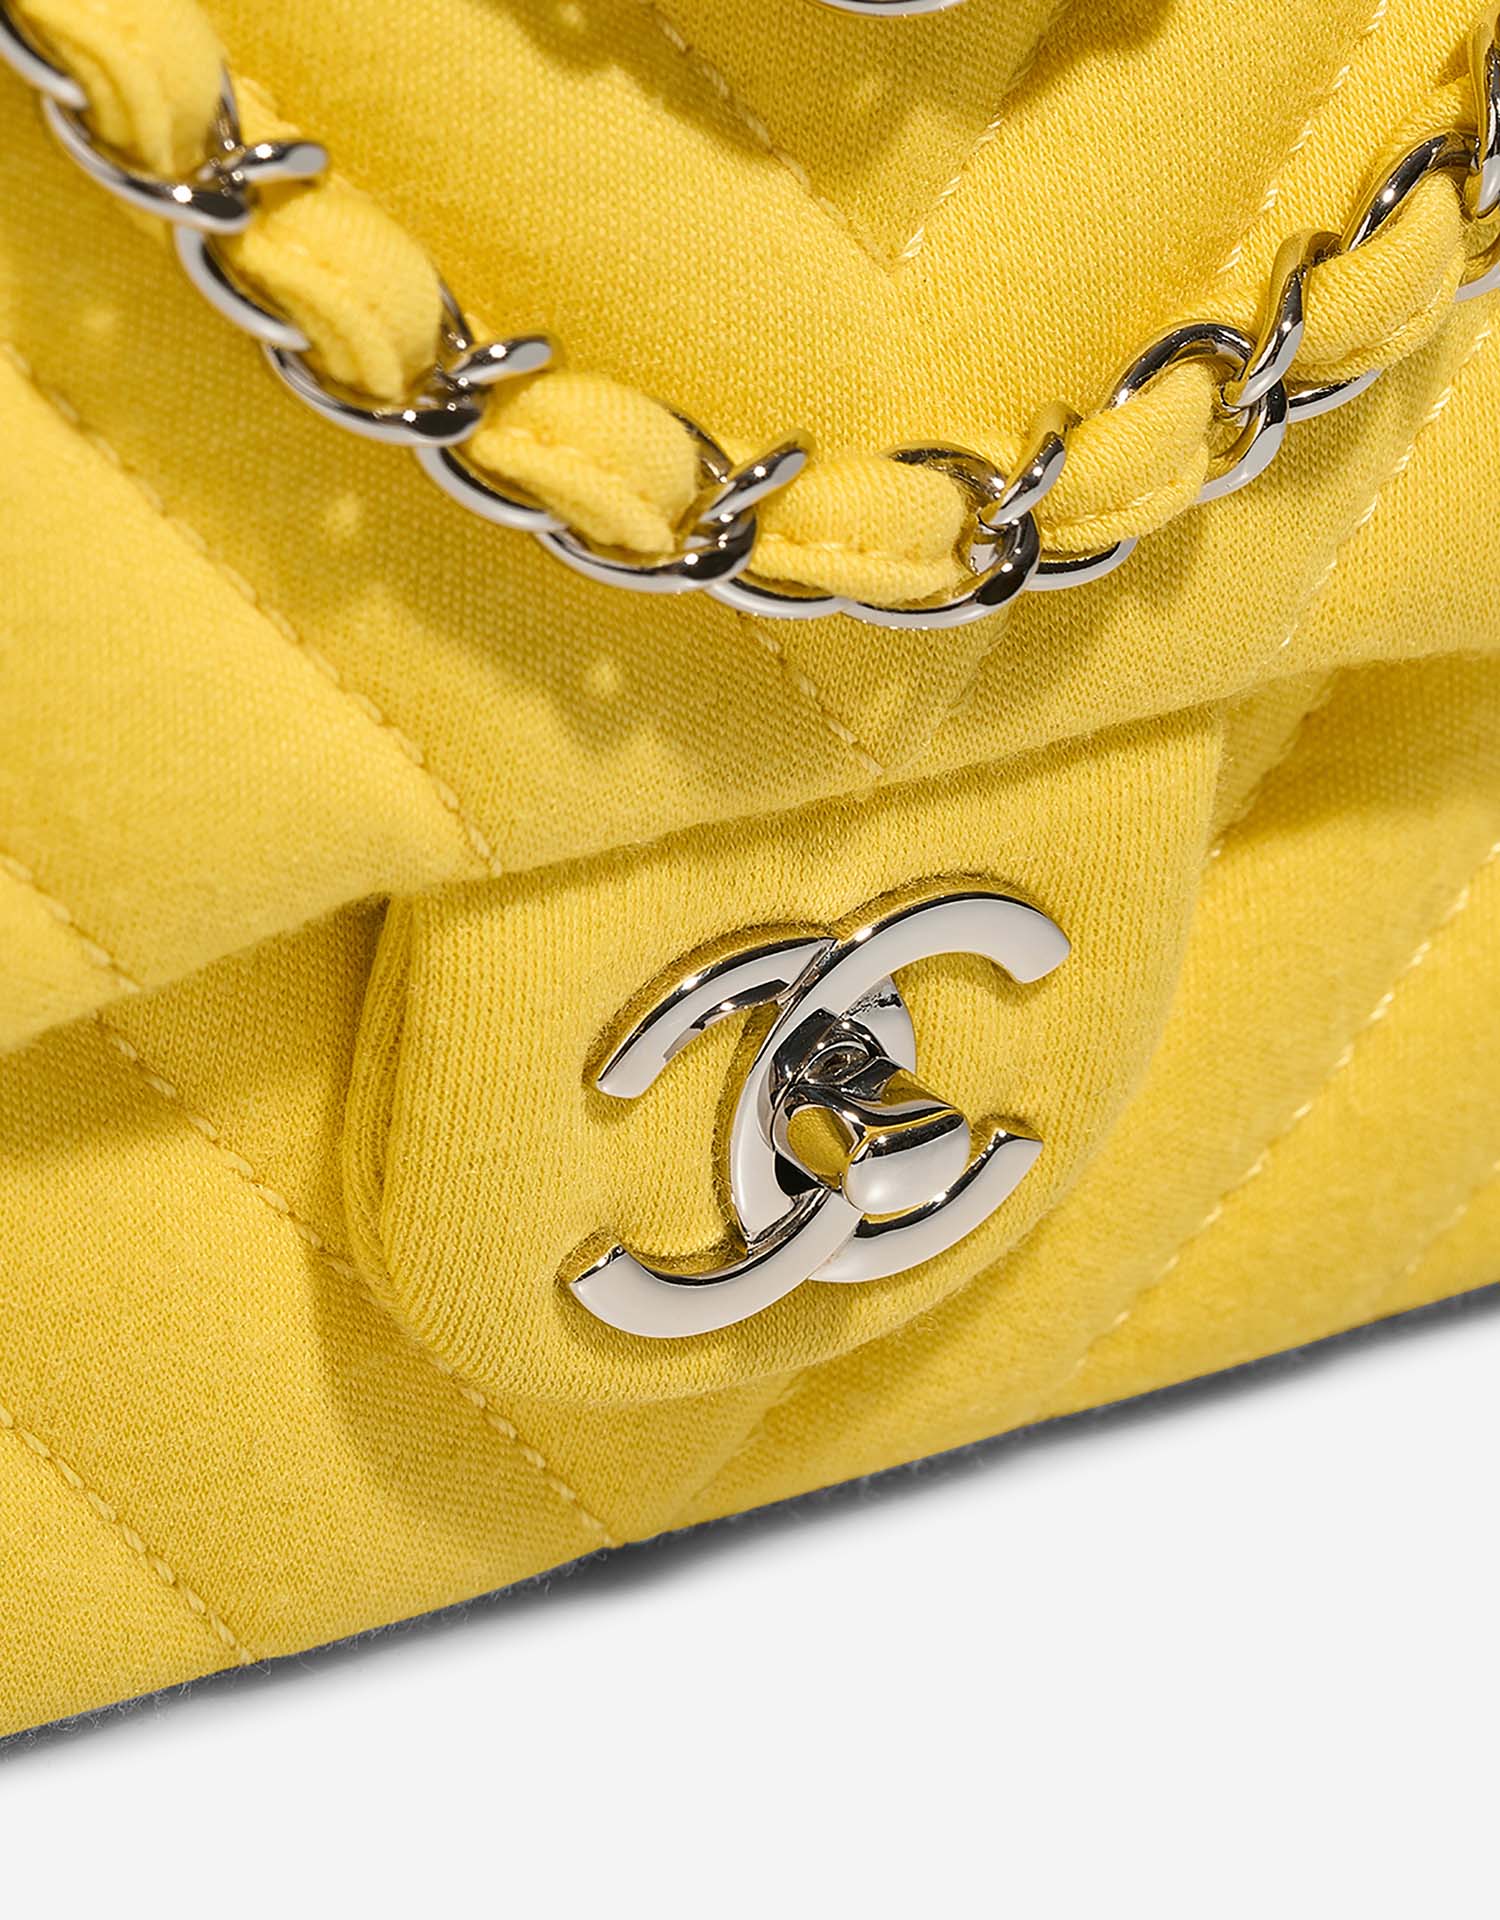 Chanel Timeless Medium Gelb Verschluss-System | Verkaufen Sie Ihre Designer-Tasche auf Saclab.com